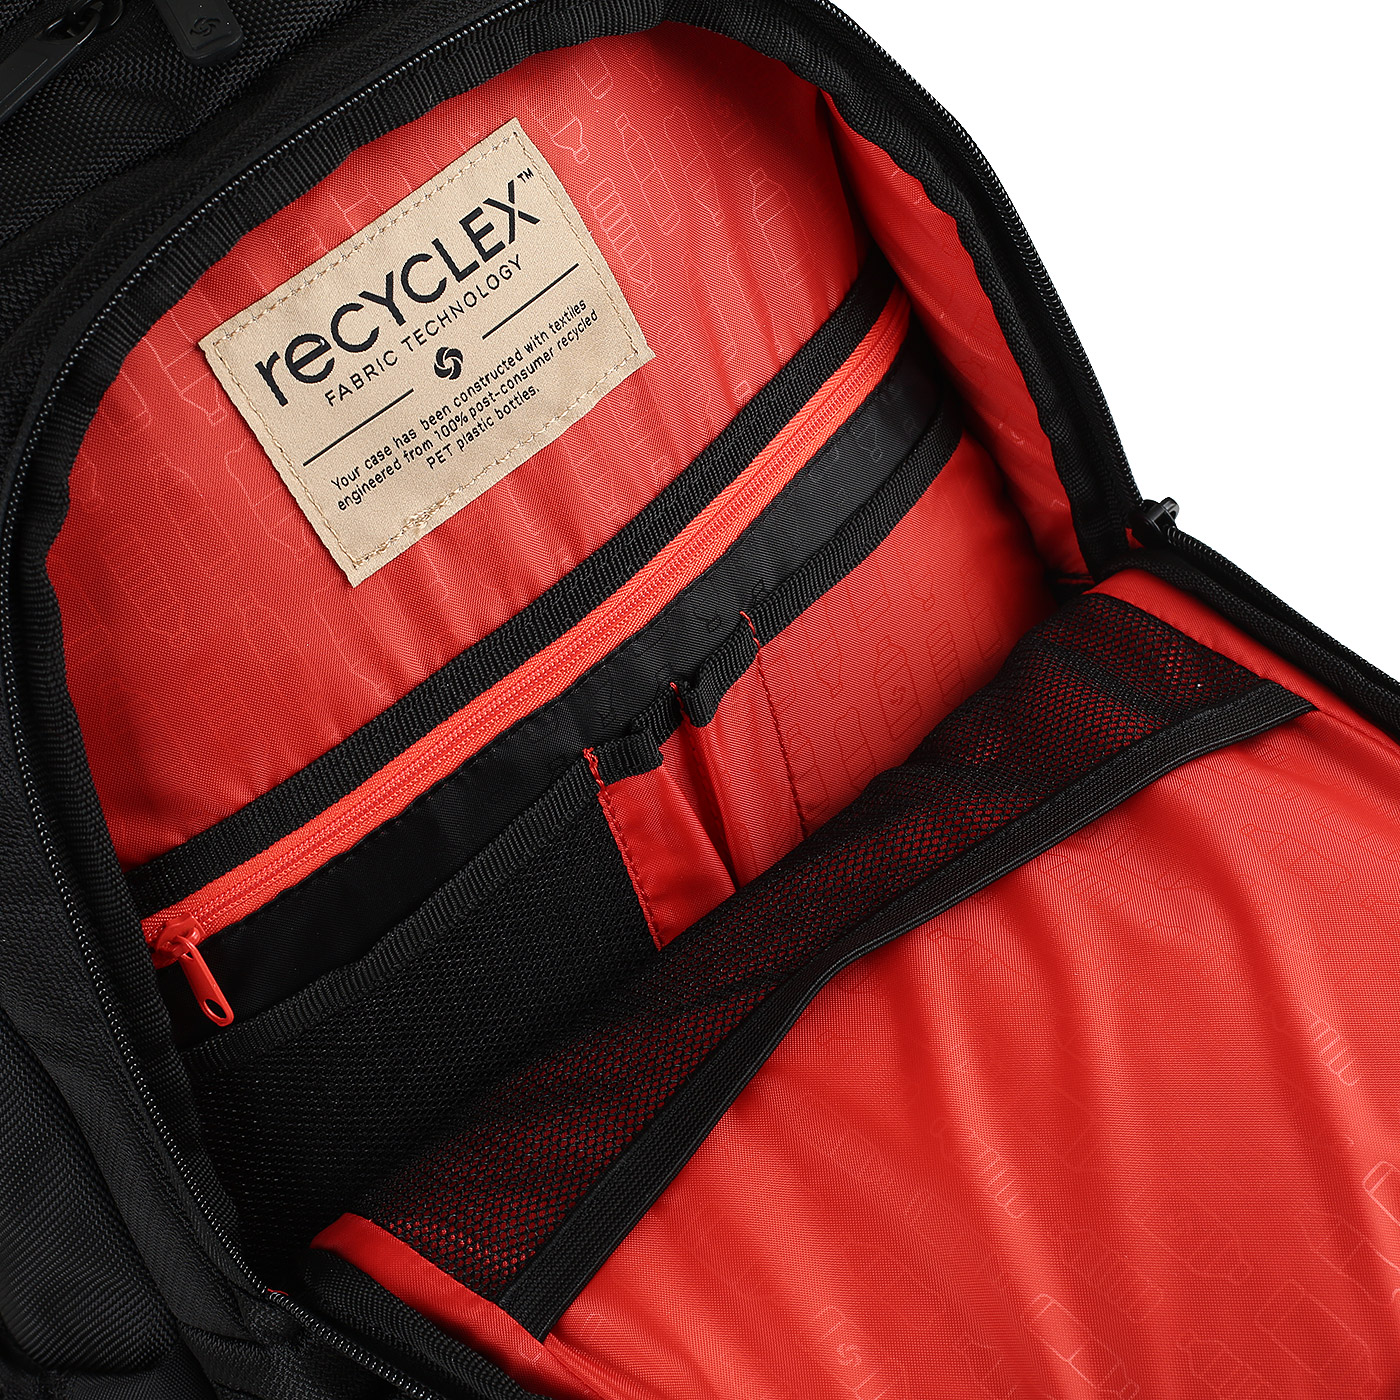 Рюкзак с отделением для ноутбука Samsonite Iconn Eco